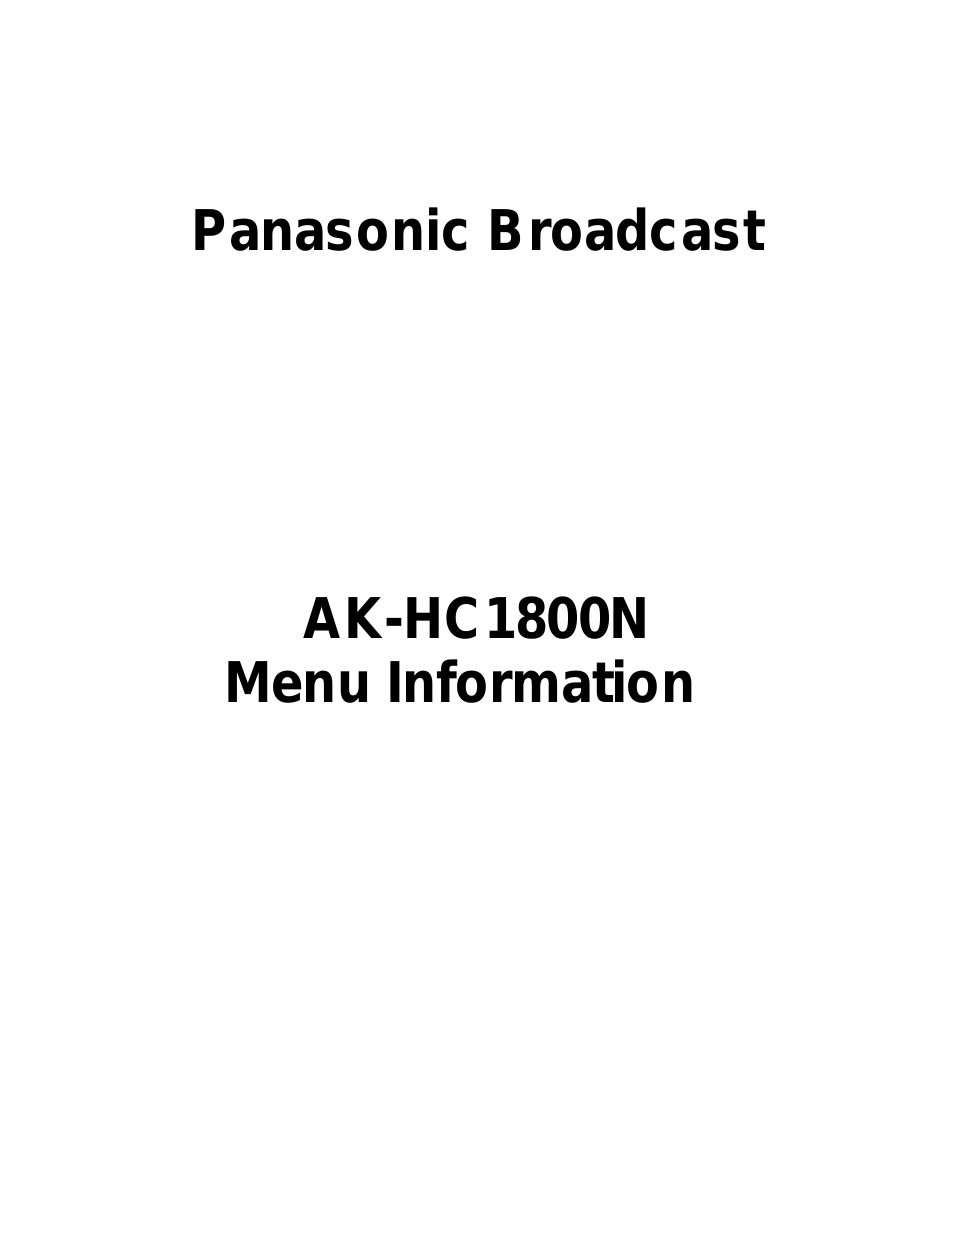 AK-HC1800N